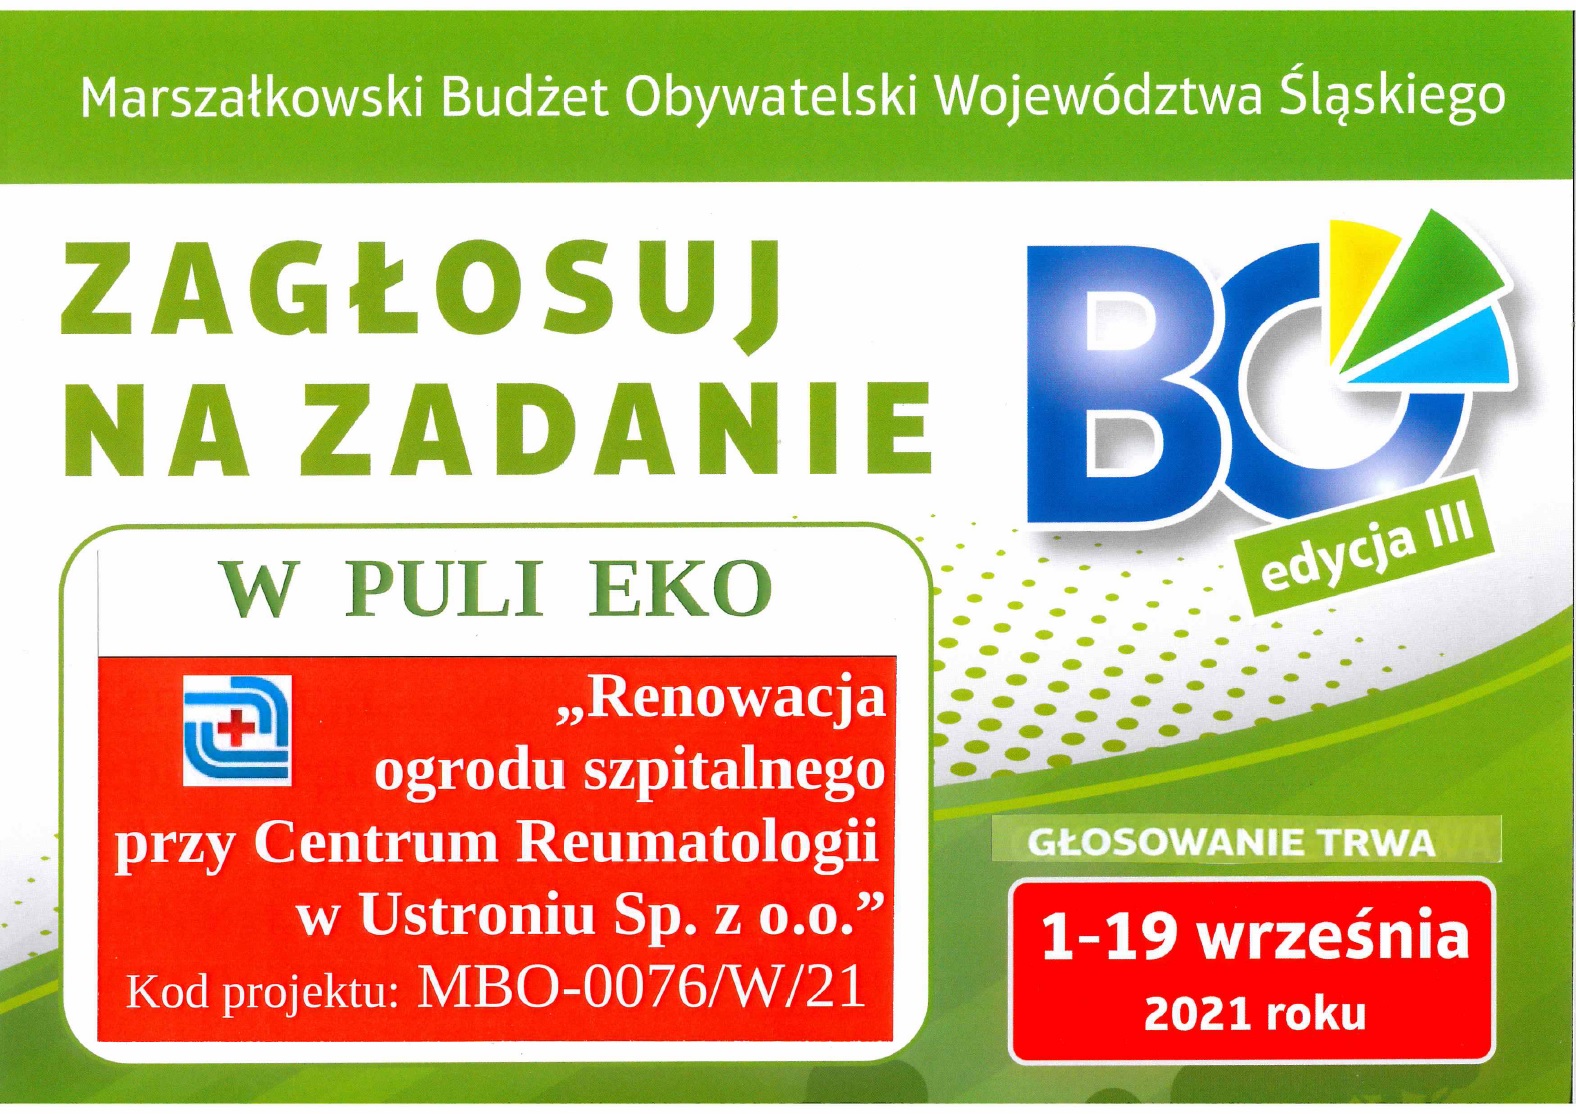 Góra plakatu promującego Marszałkowski Budżet Obywatelski. Pod napisem: Zagłosuj na zadanie w puli EKO jest pełna nazwa projektu renowacji ogrodu.